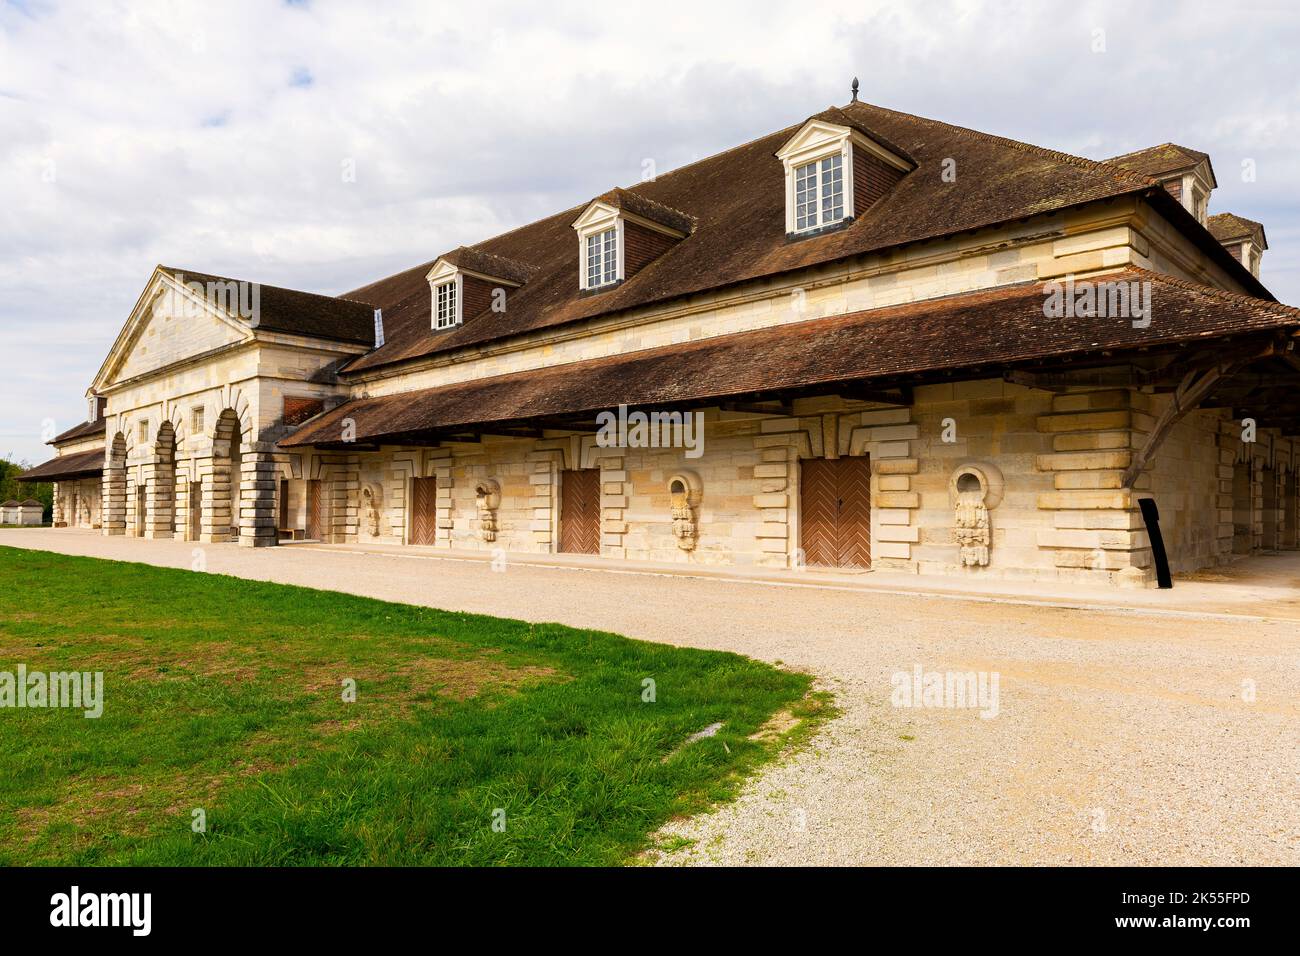 La Saline Royale (Royal Saltworks) est un bâtiment historique situé à Arc-et-Senans, dans le département du Doubs, dans l'est de la France. Banque D'Images